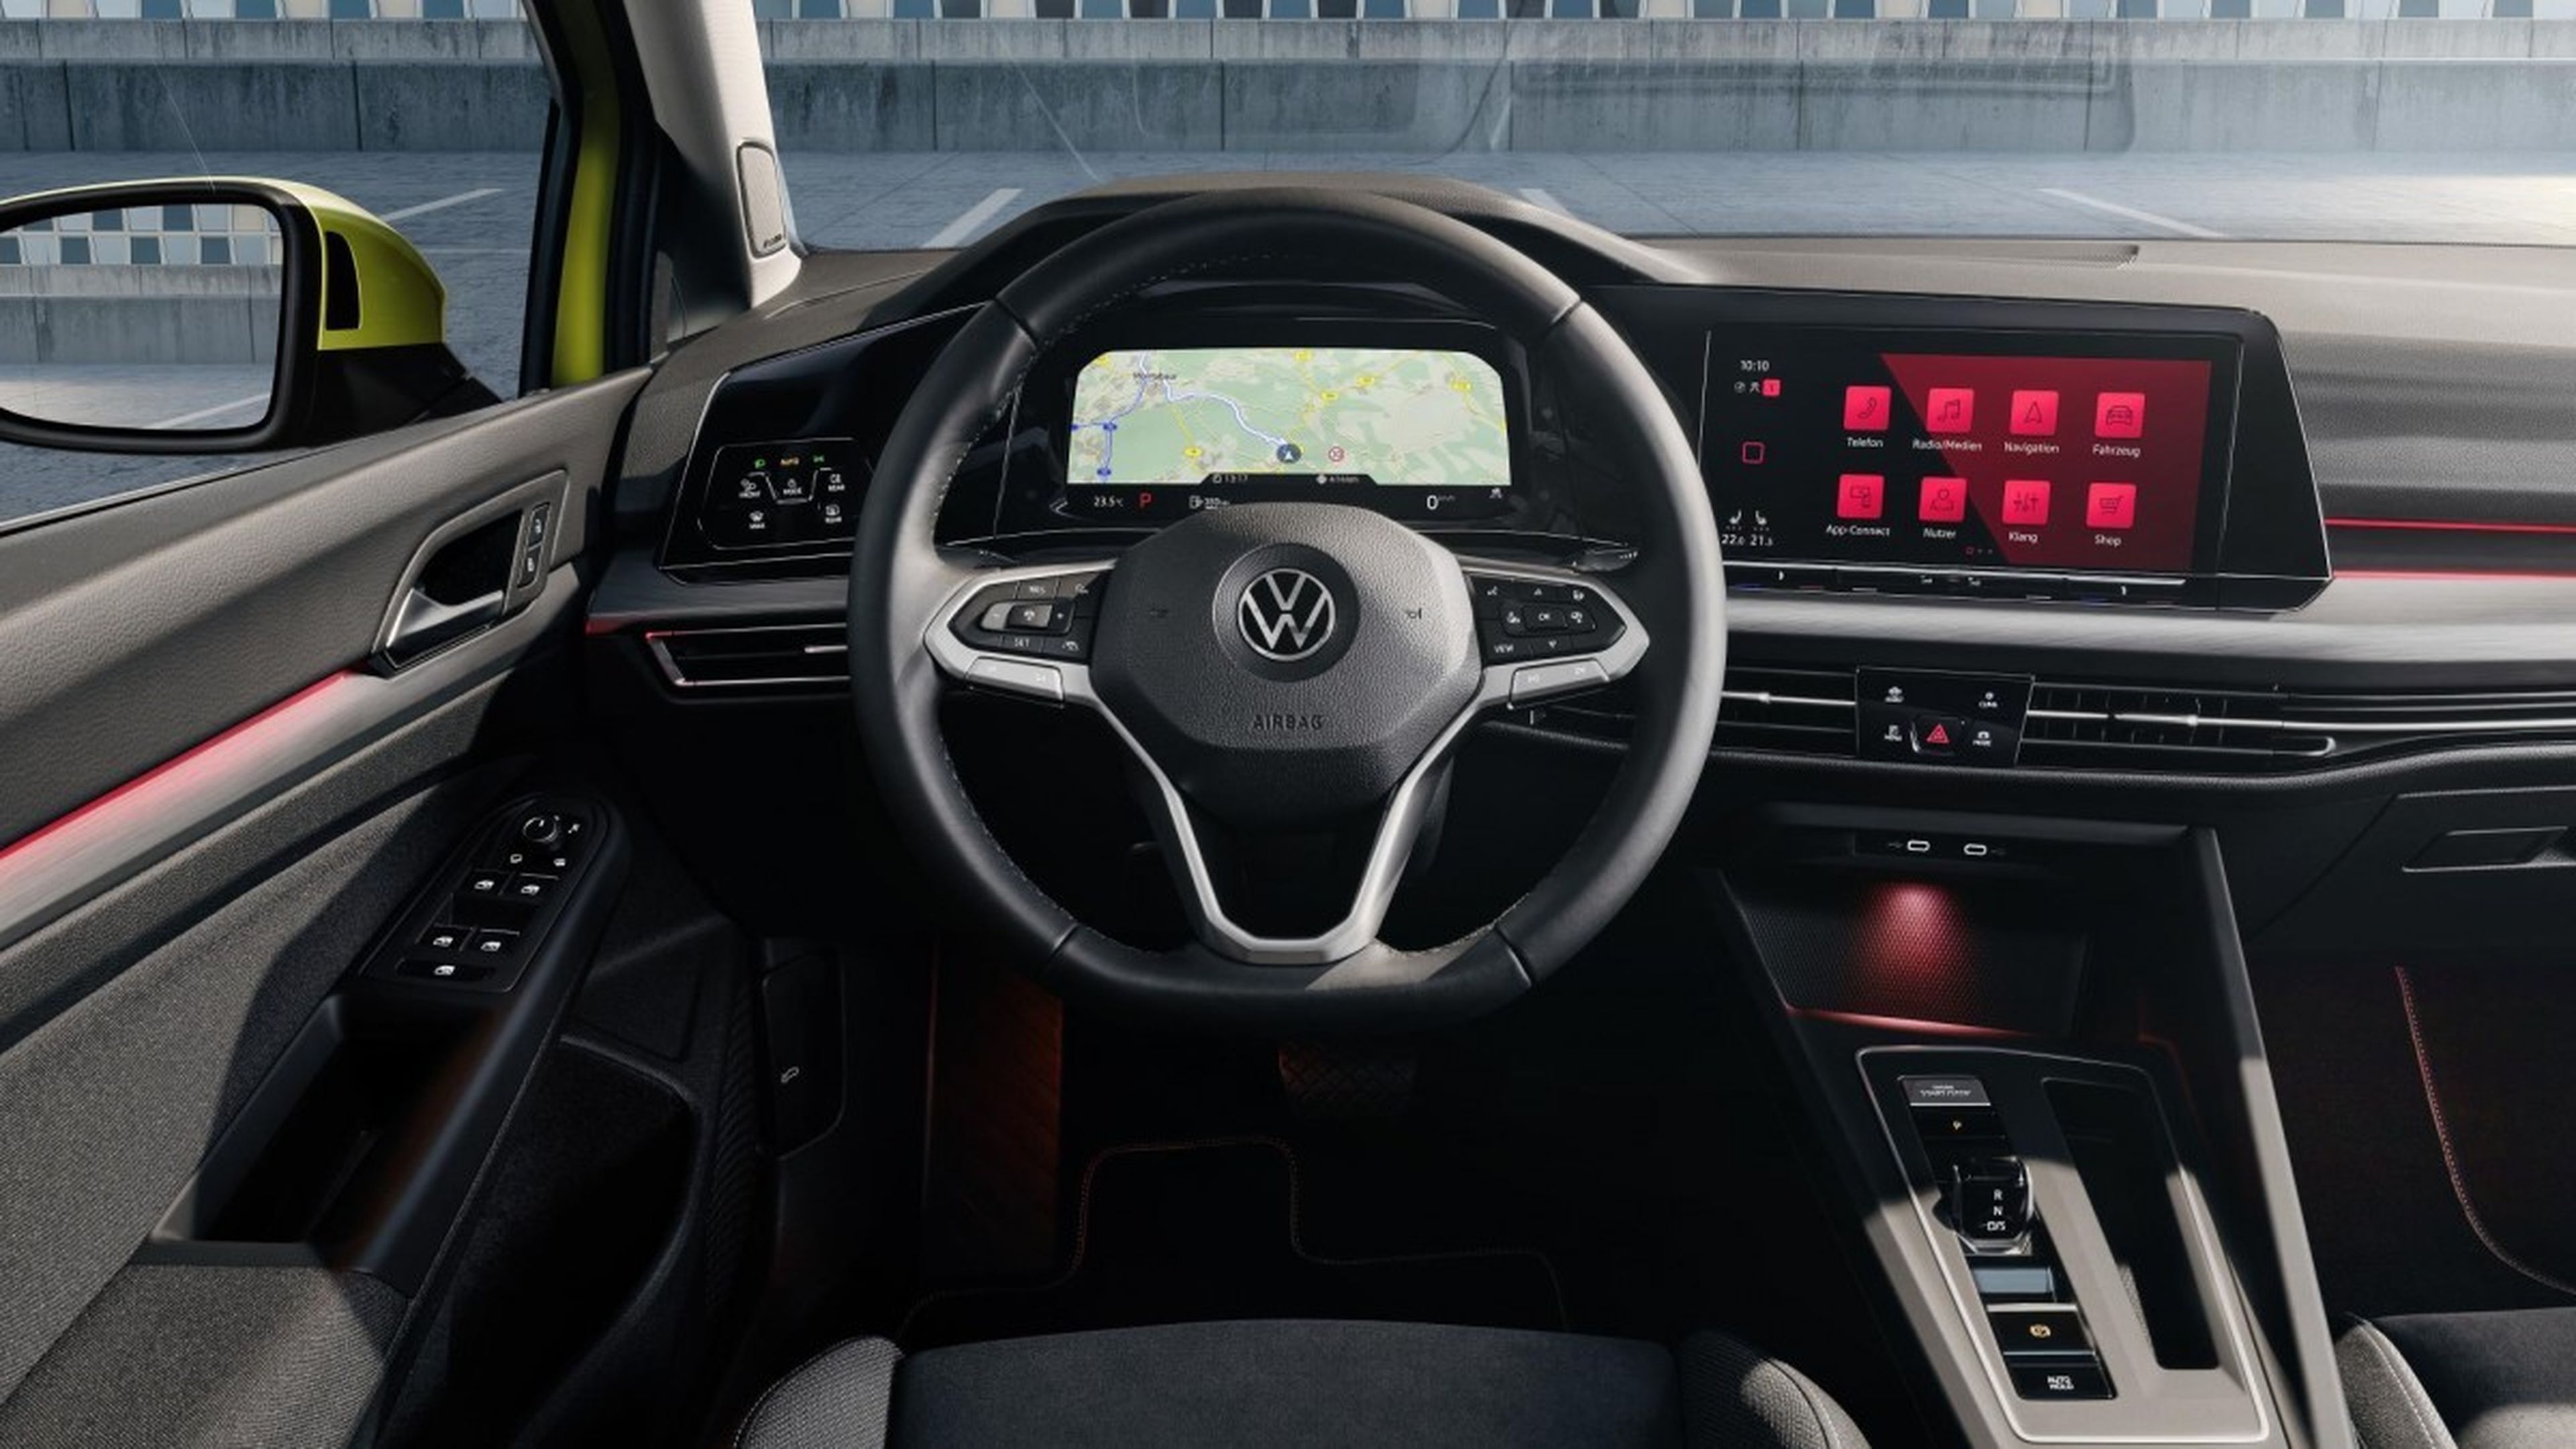 Nuevo Volkswagen Golf 8, esta es la tecnología que estrena en su interior